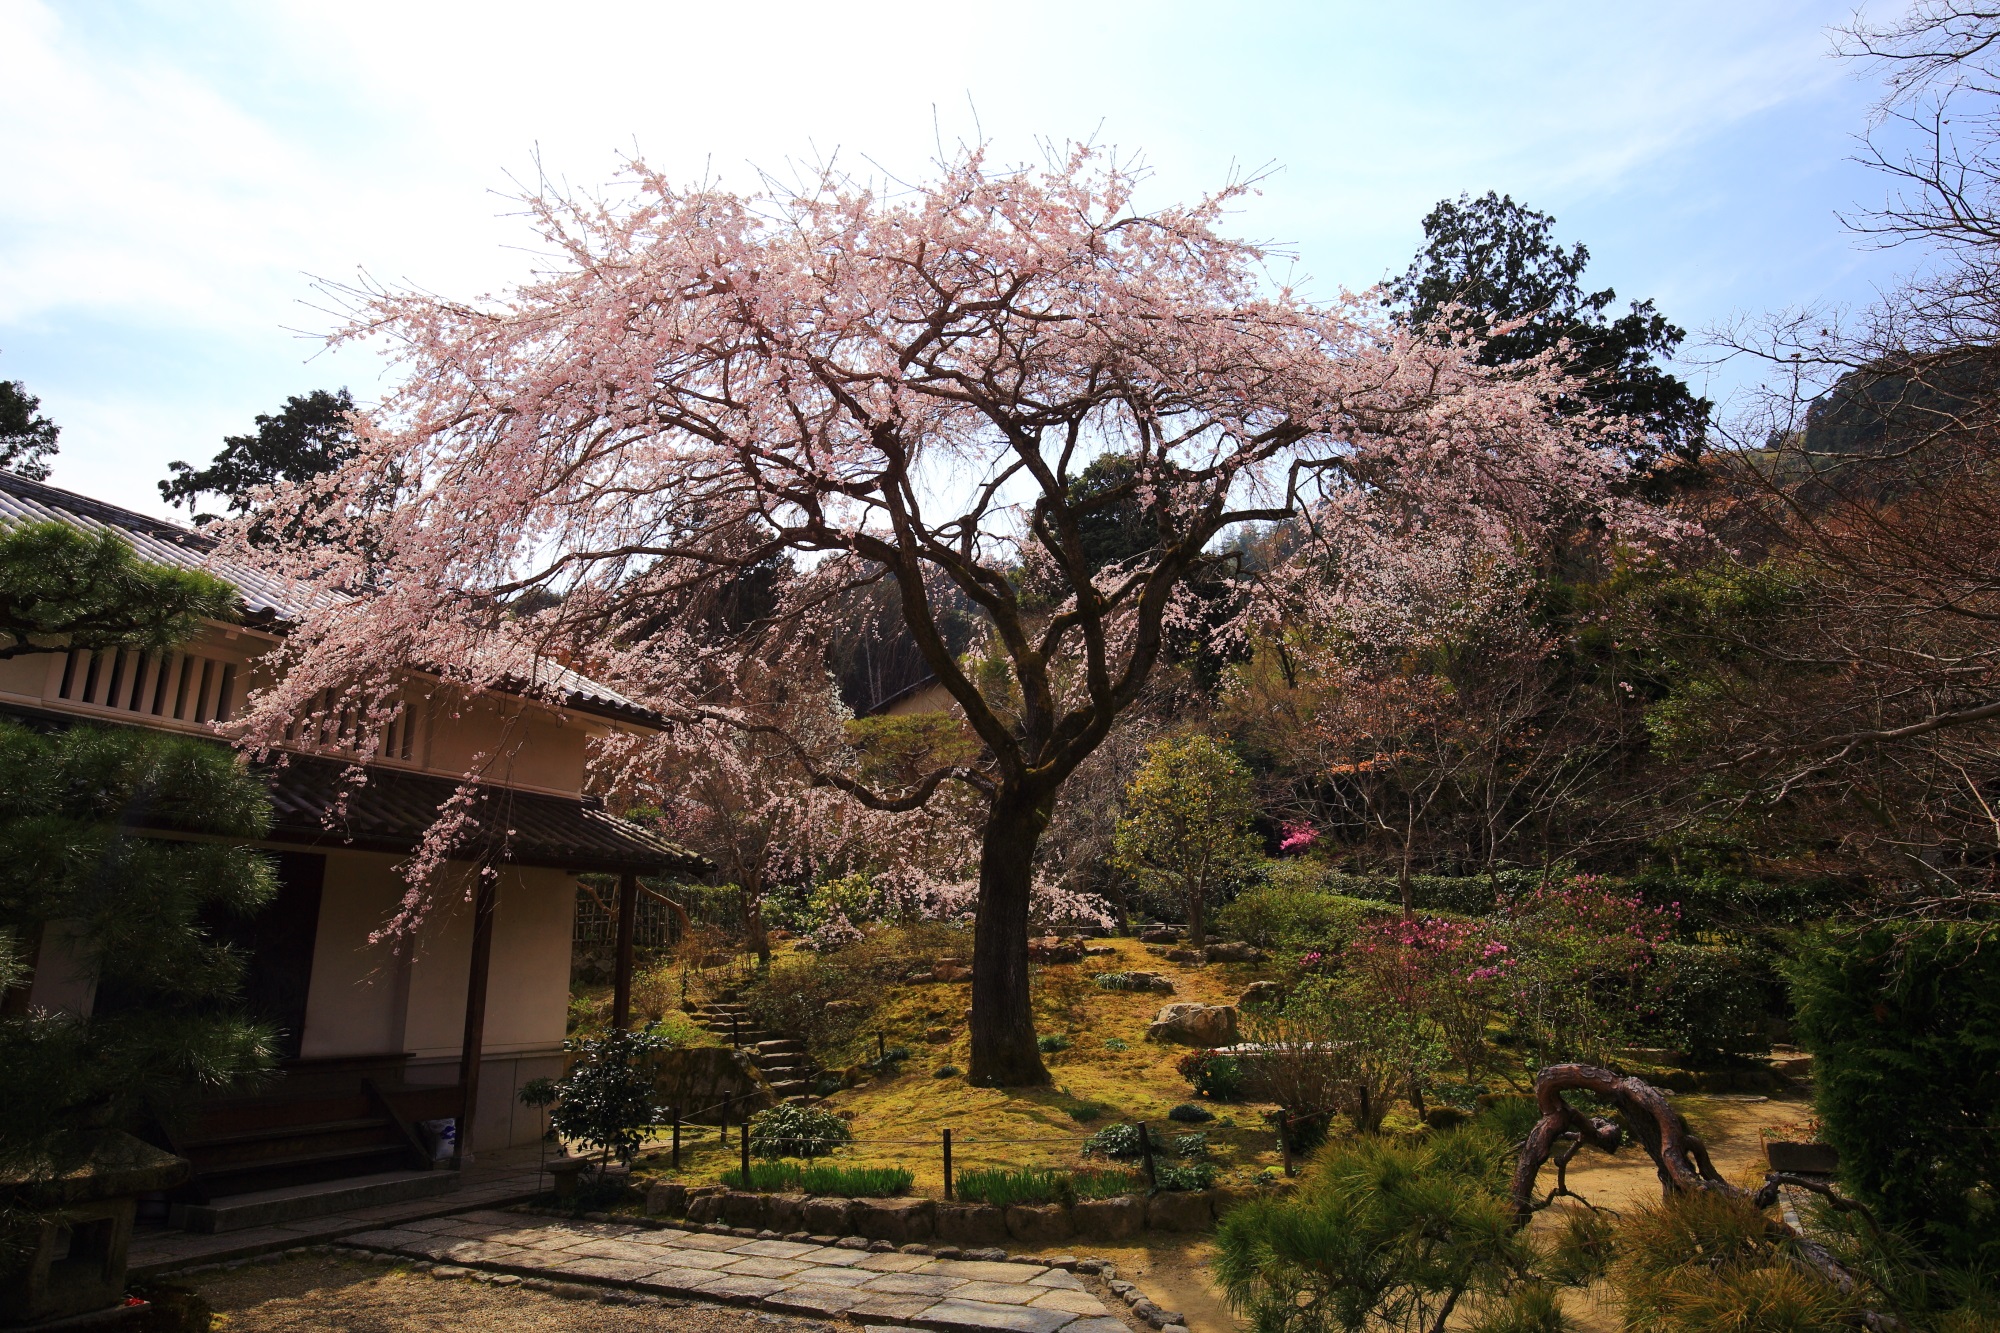 京都奥嵯峨の桜の穴場の常寂光寺